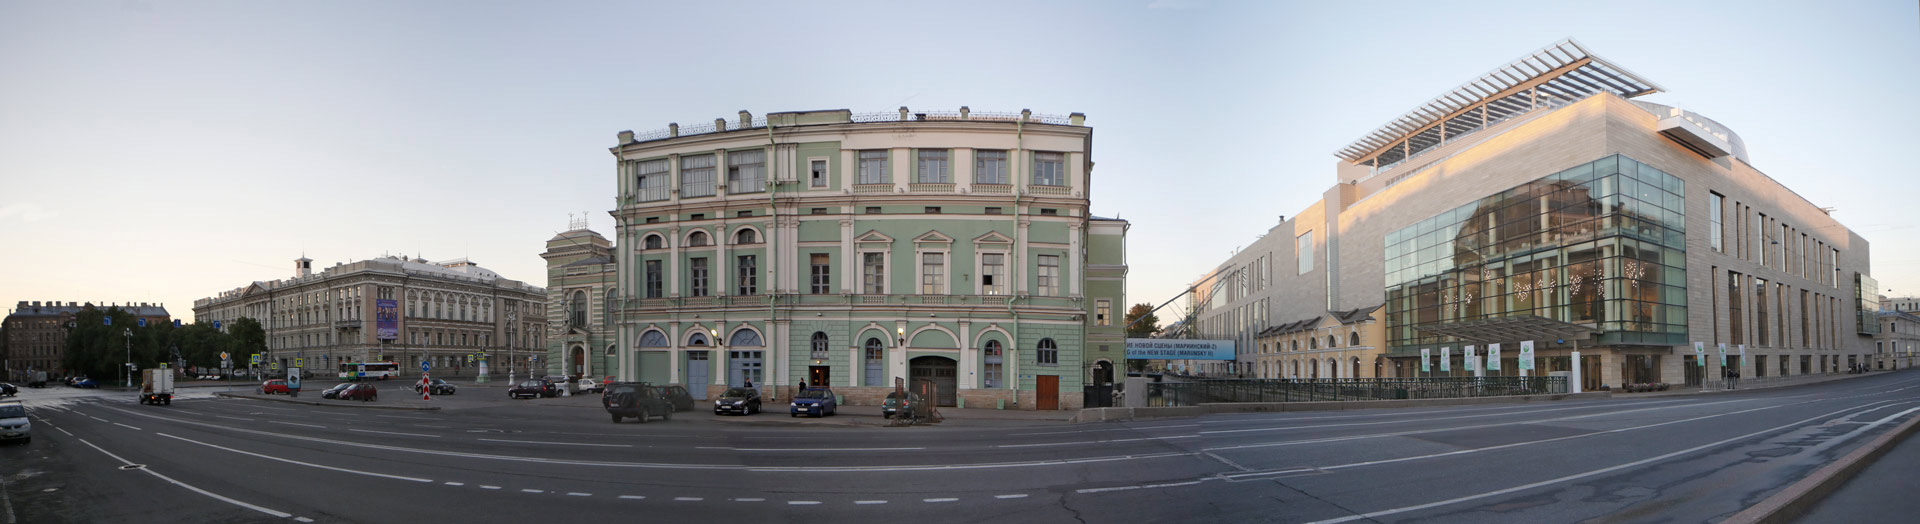 Театральная пл.  Санкт-Петербург, Реконструкция фасада Мариинки 2